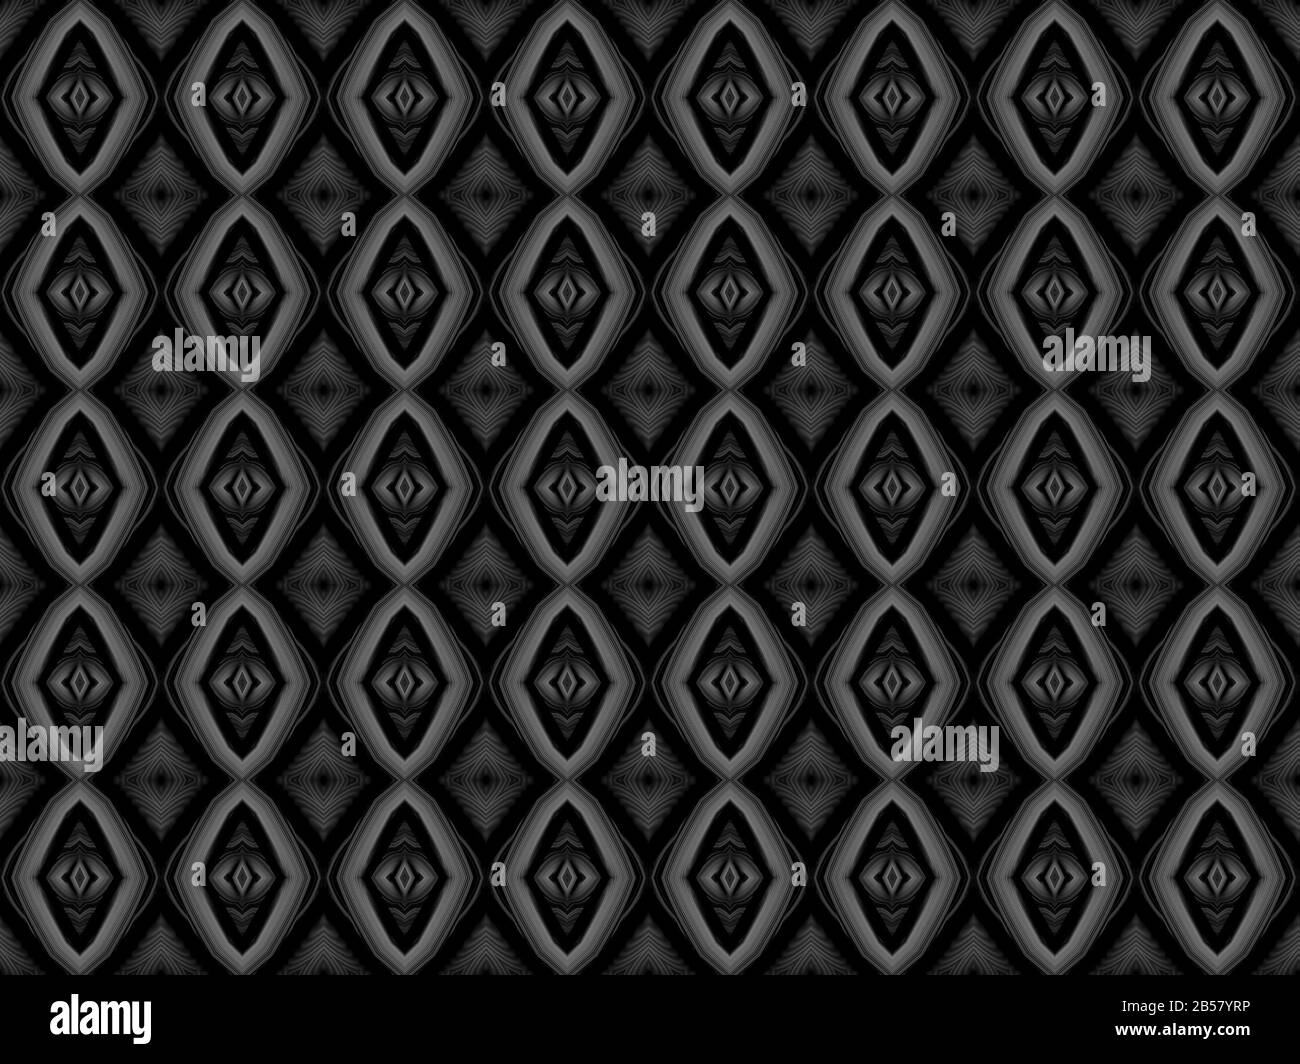 Diamond shape pattern on a black background Stock Photo